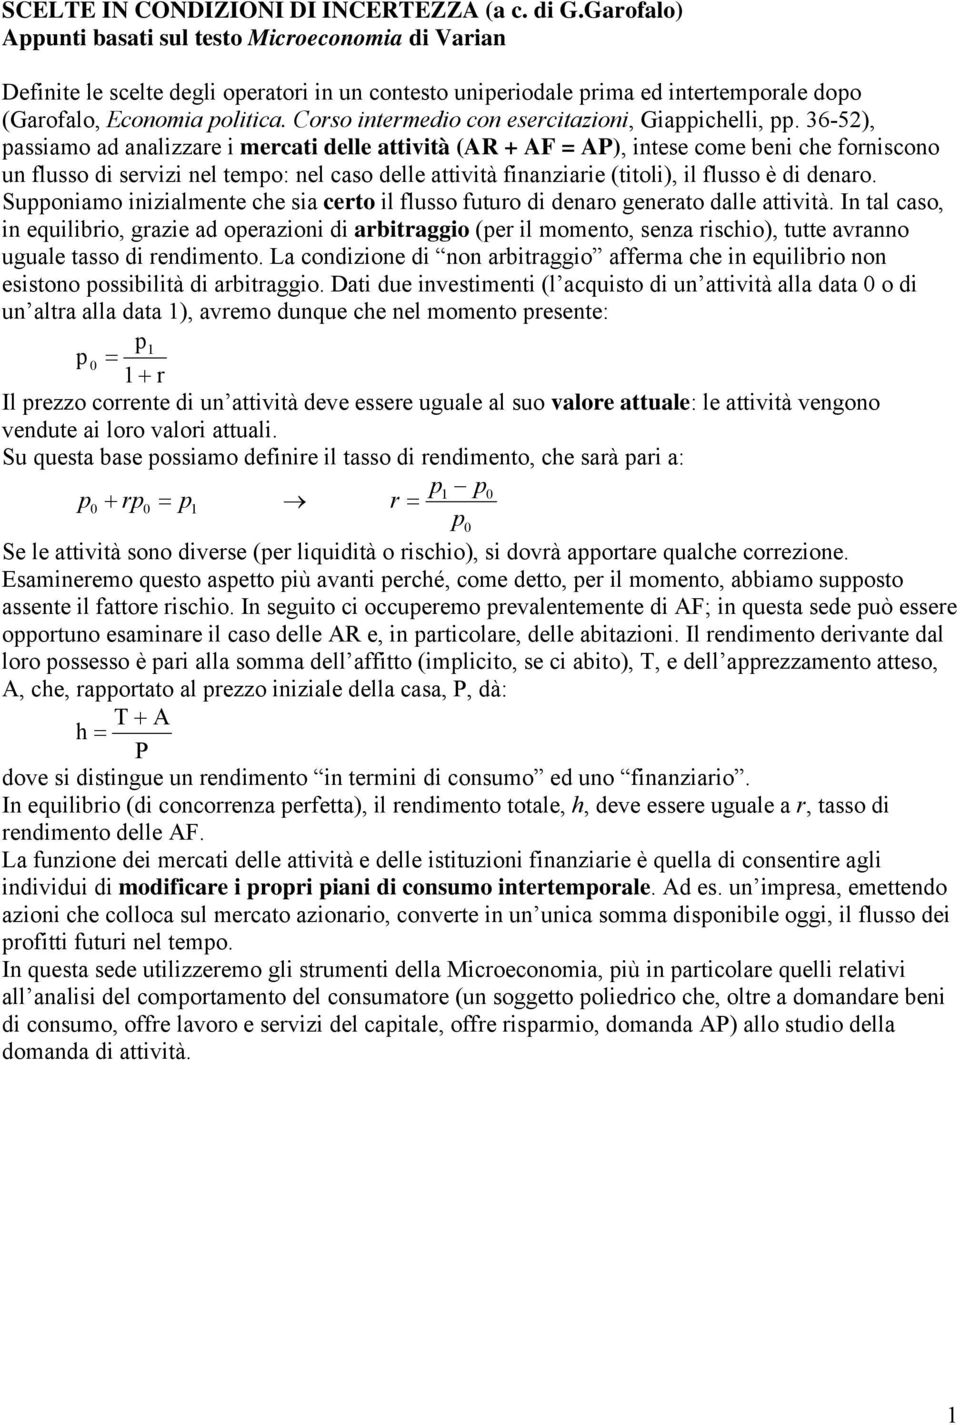 Coro interedio con eercitazioni, Giappichelli, pp.